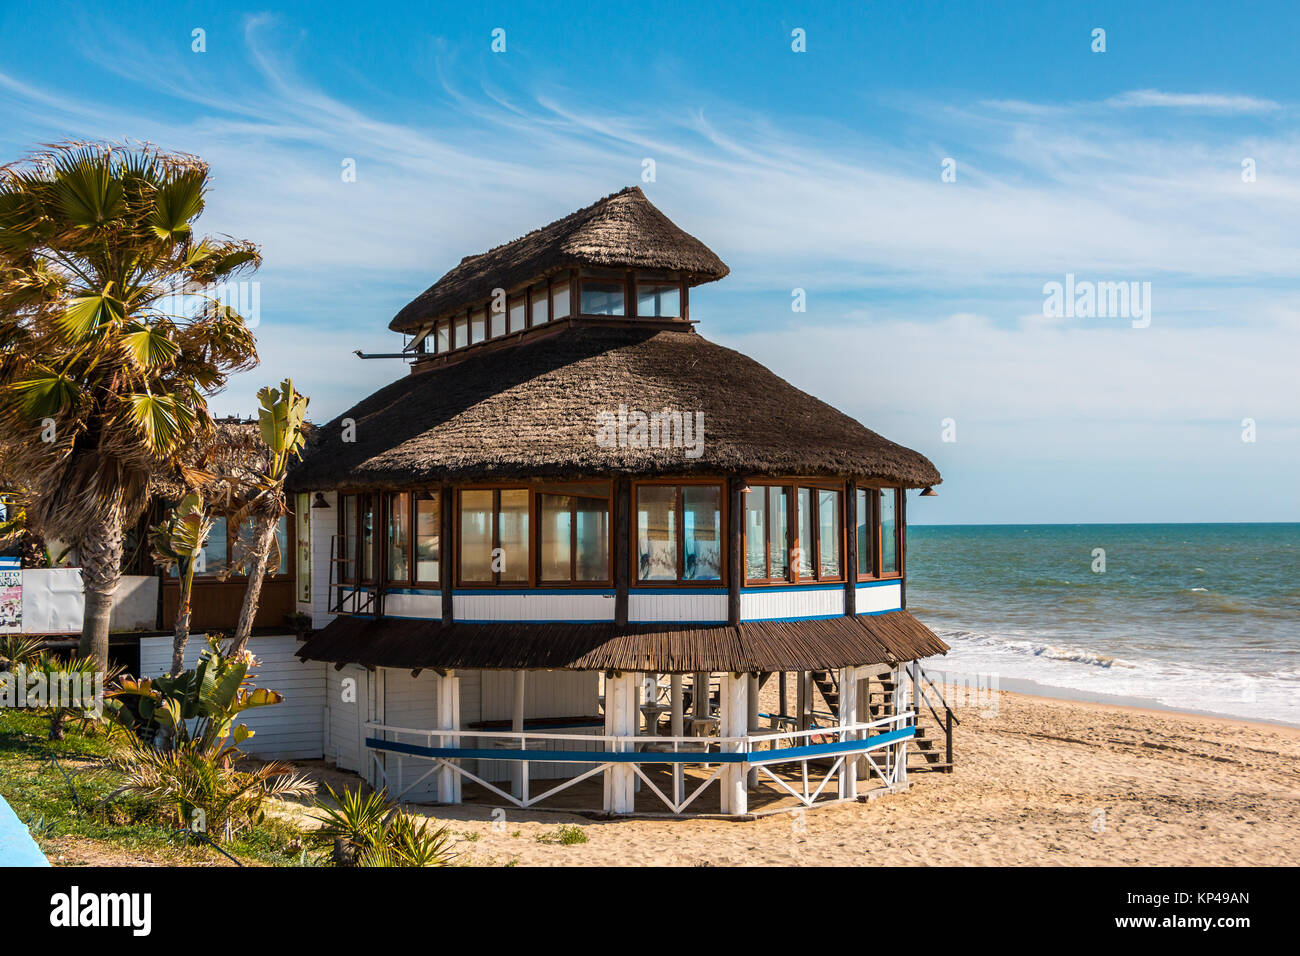 El restaurante de la playa, cerca del mar de España Foto de stock